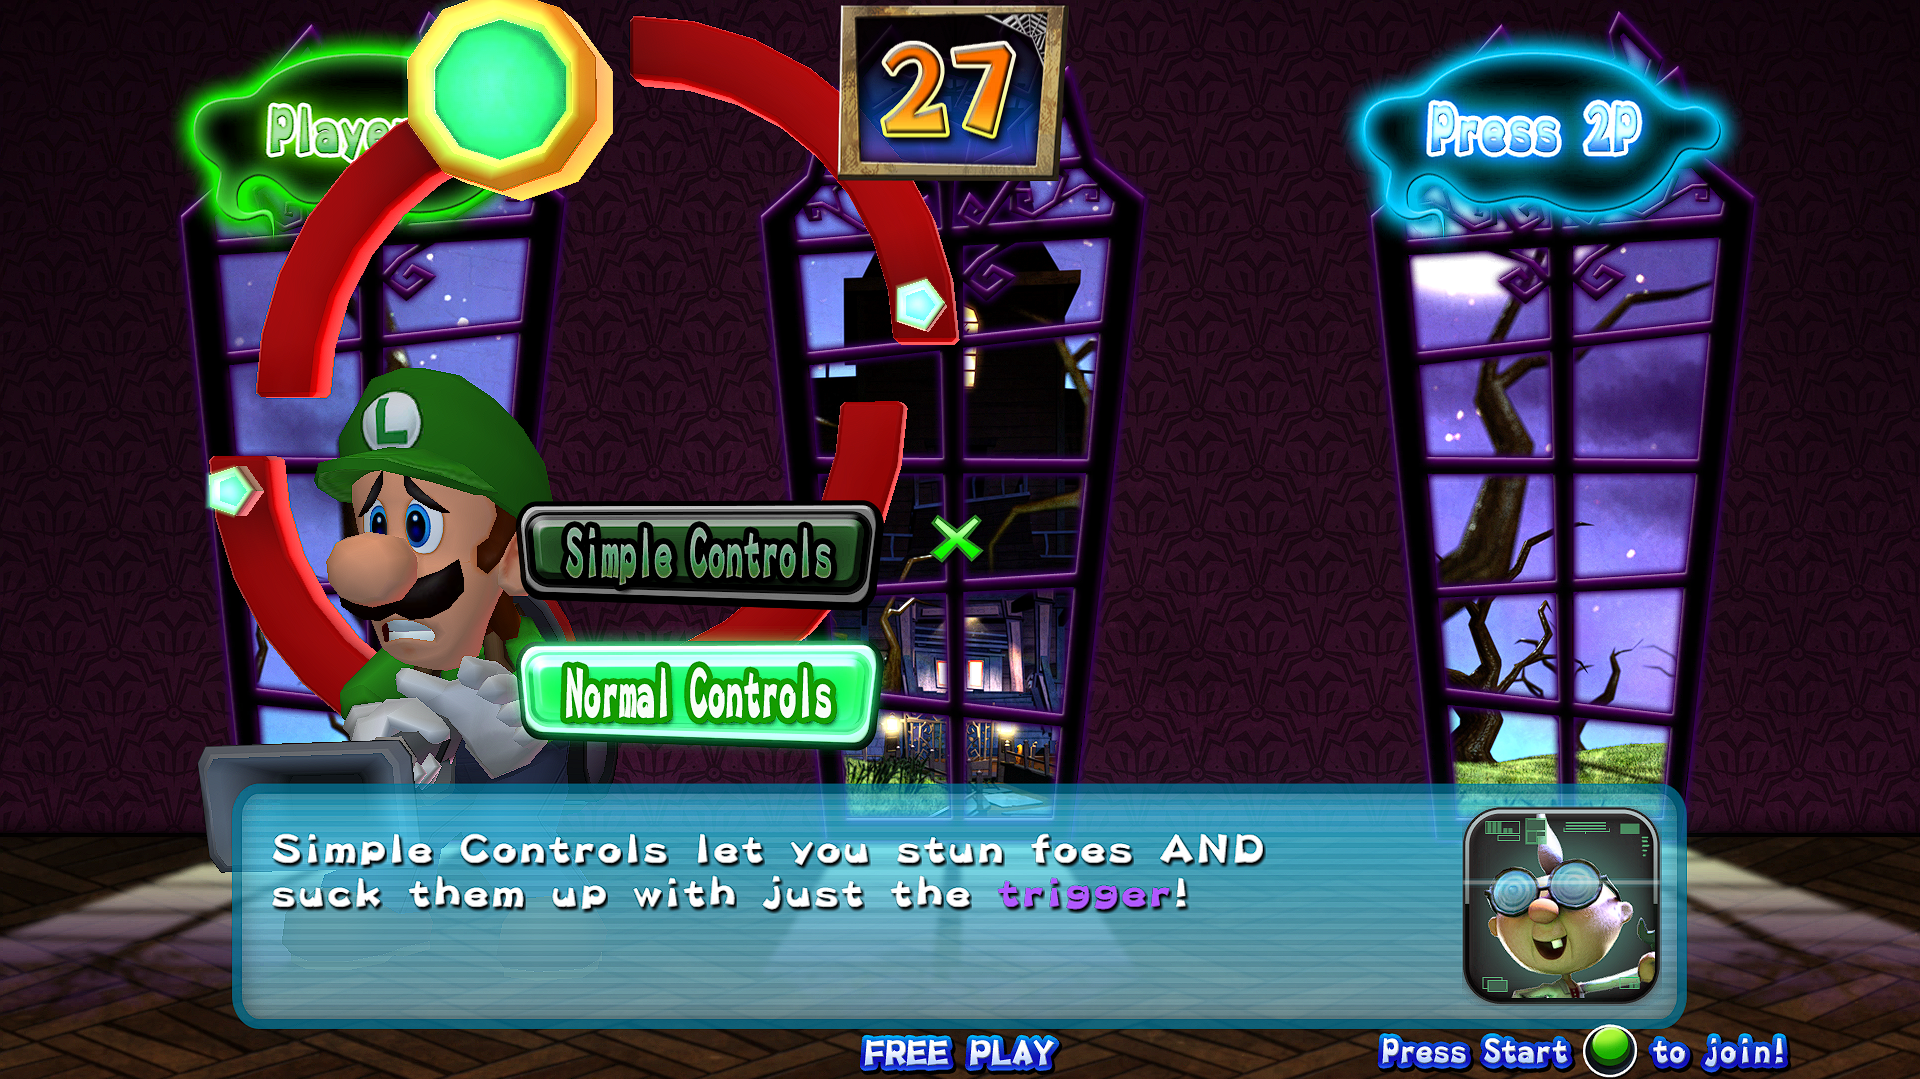 Luigis Mansion in Video Game Titles 